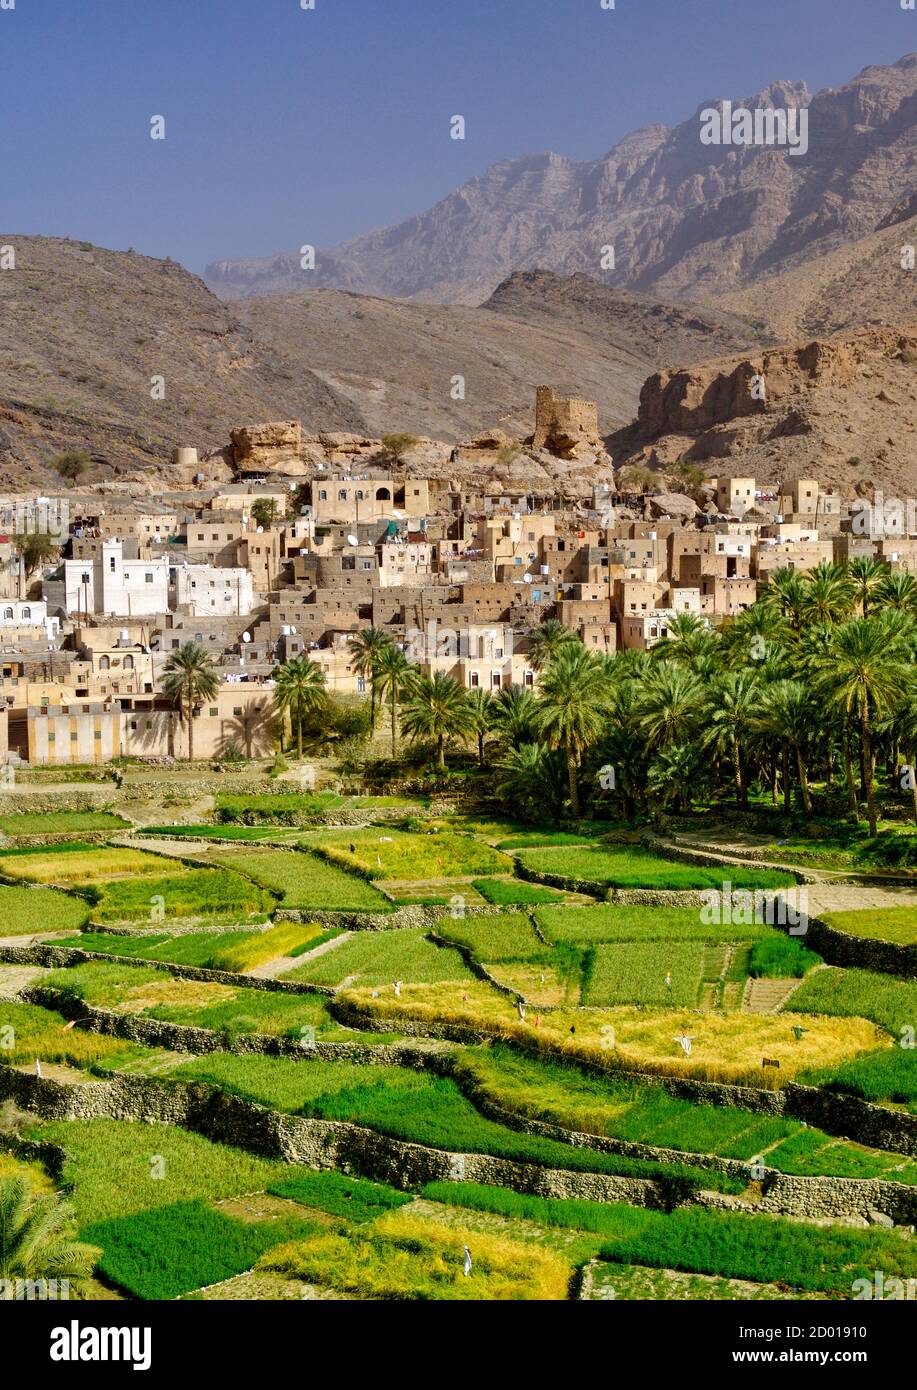 El pueblo de Bilad Seet y sus plantaciones en Wadi Bani Auf en las montañas Jebel Akhdar de Omán. Foto de stock